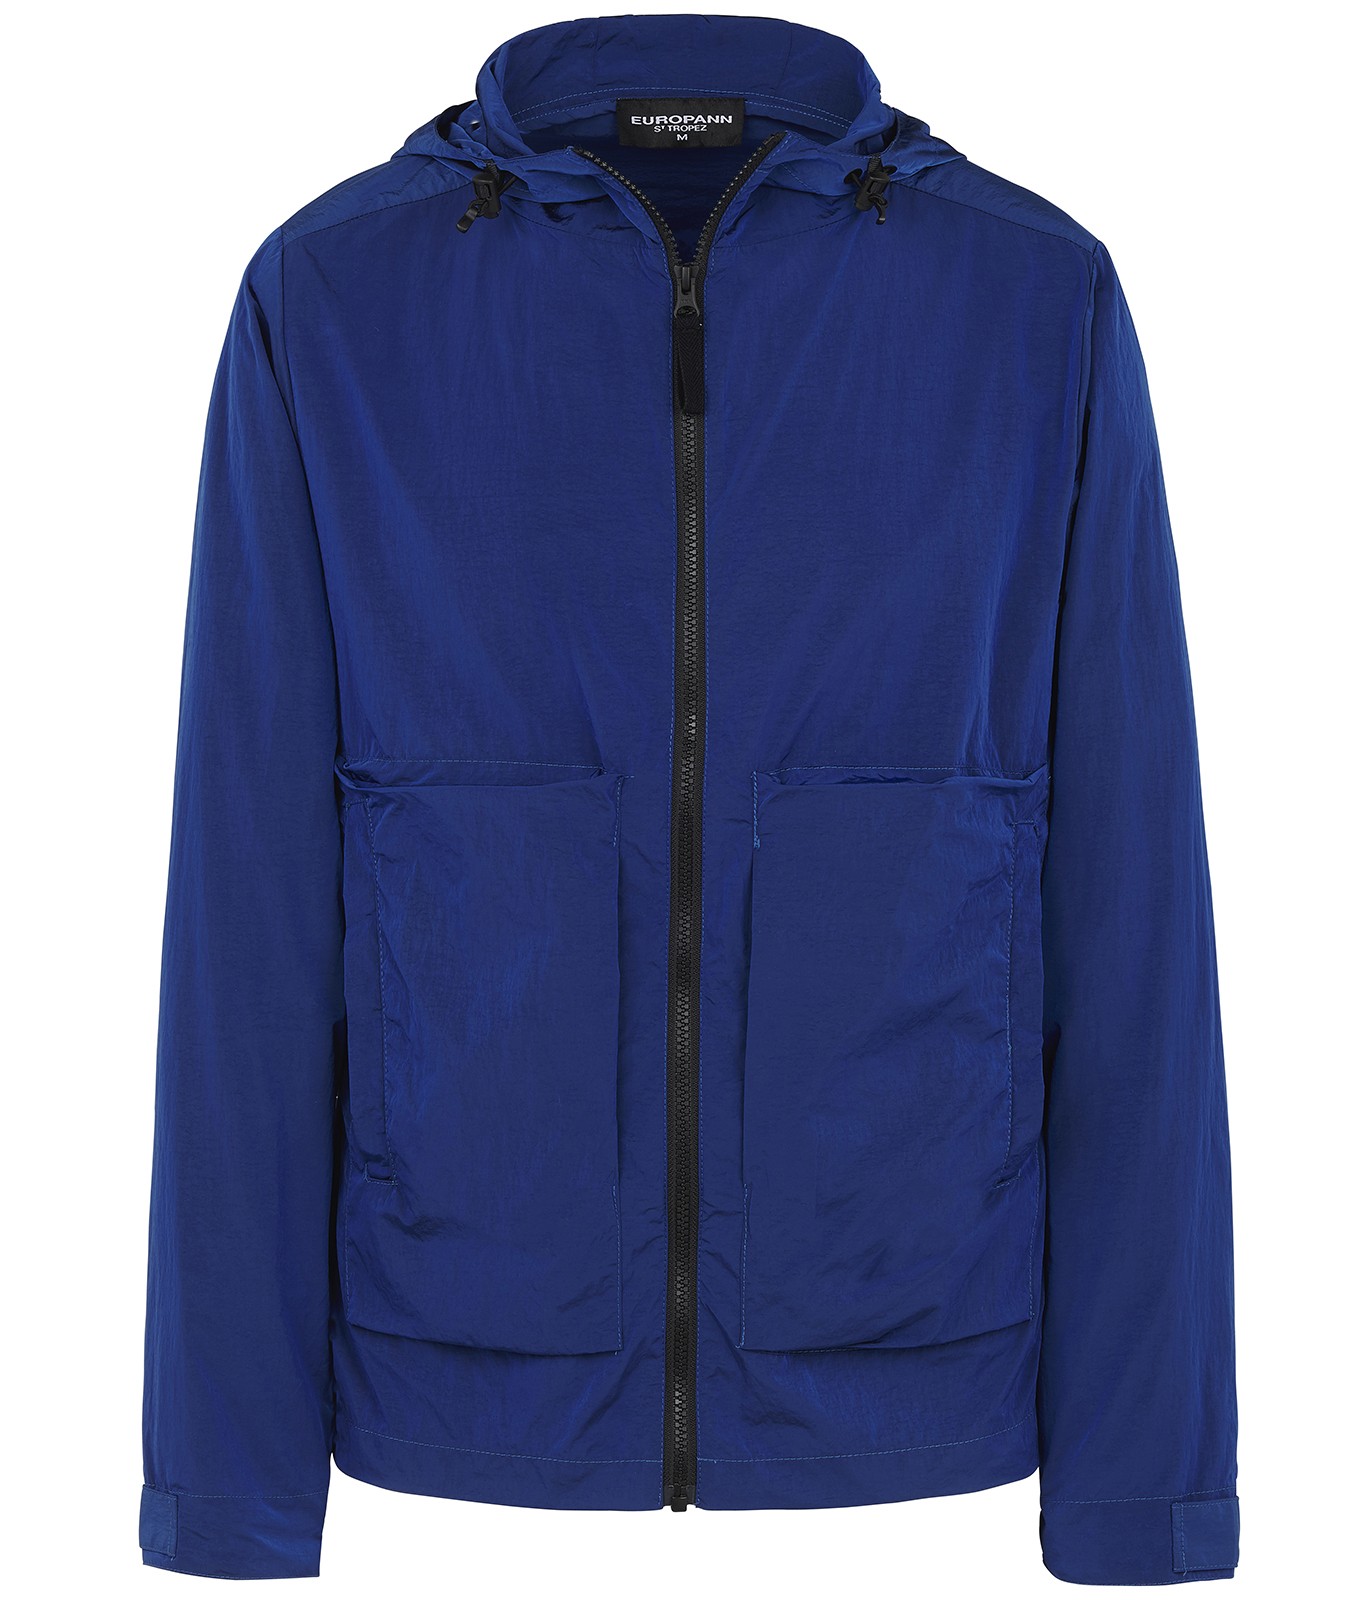 Blue anorak long sleeves jacket for men | Quality brand Europann